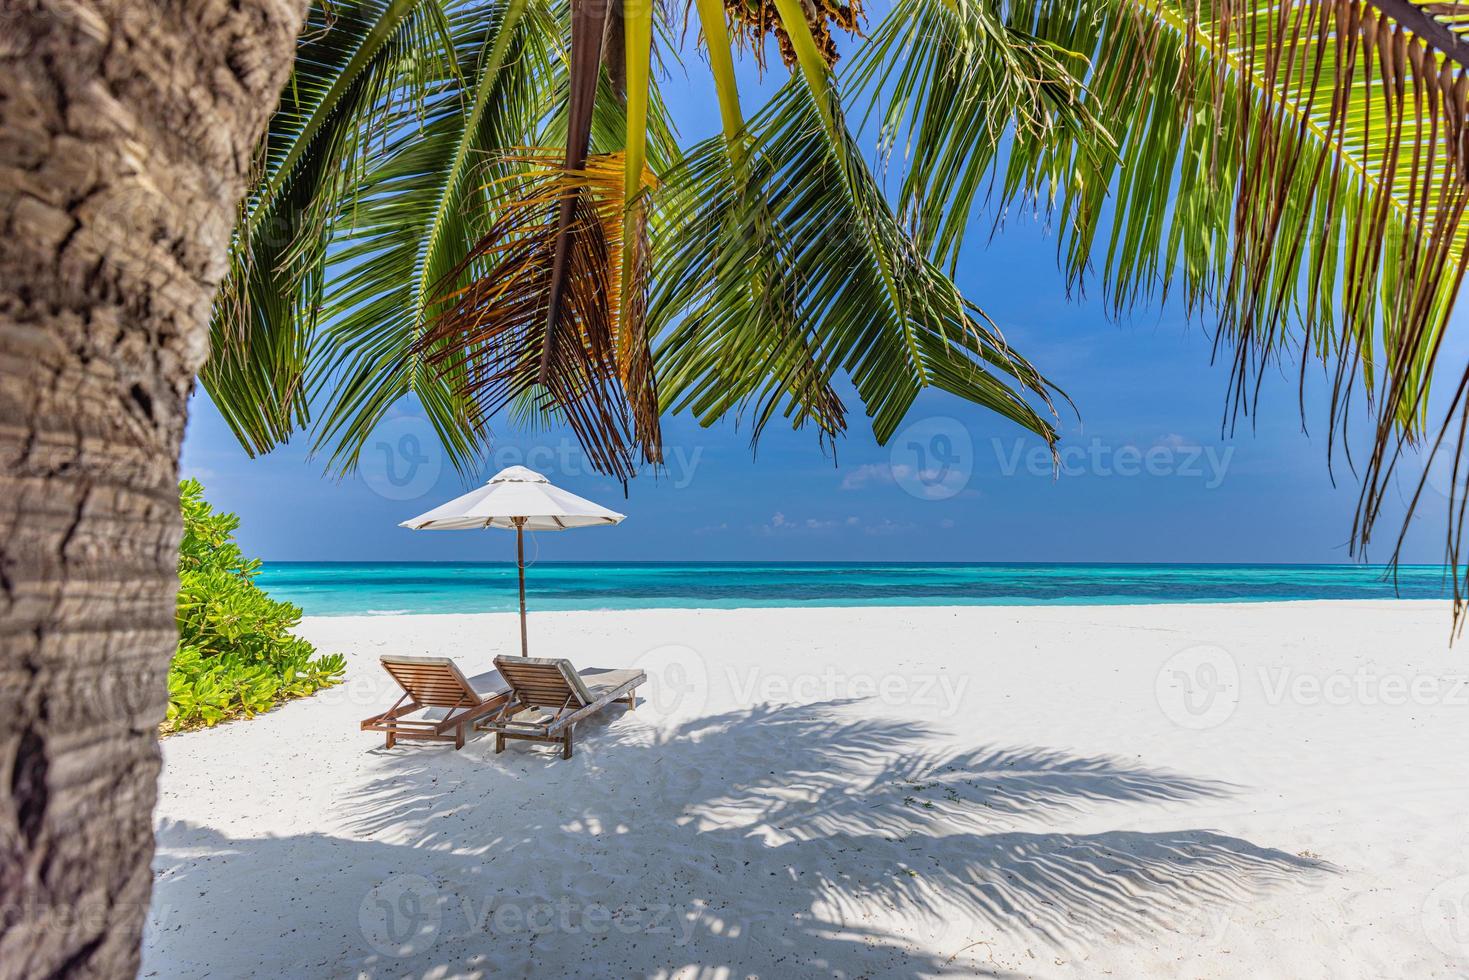 tranquila playa tropical. arena blanca y hojas de palmera de coco turismo de viajes. dos sillas con cielo azul nublado, idílico resort isleño de destino de lujo. increíble paisaje de playa, concepto de libertad de pareja foto